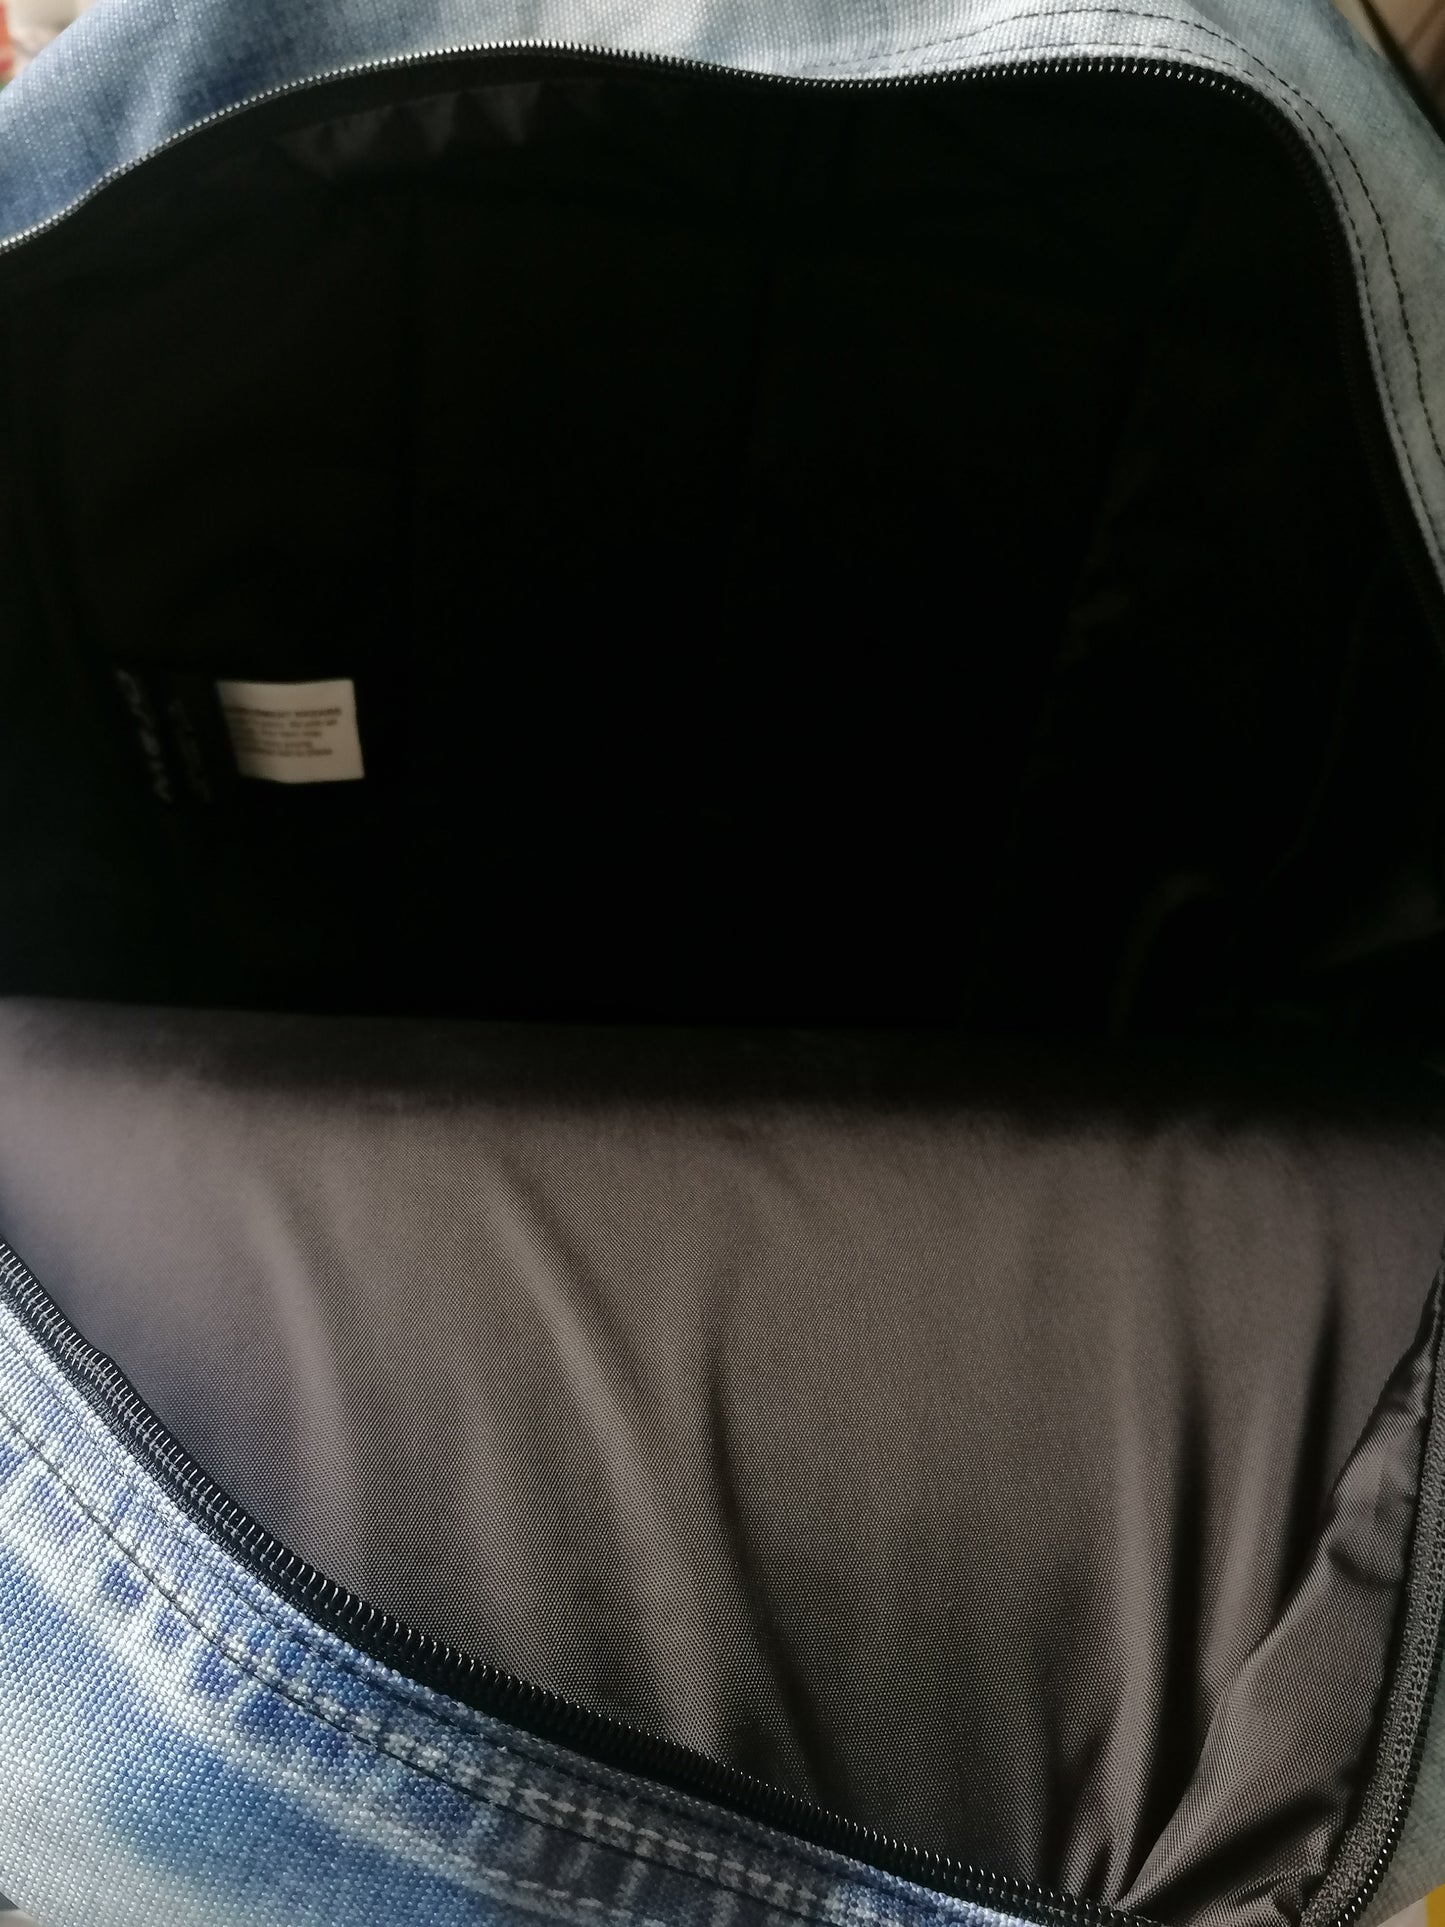 Sac à dos mojo sac à dos. Les jeans bleus sont imprimés. Une poche intérieure.